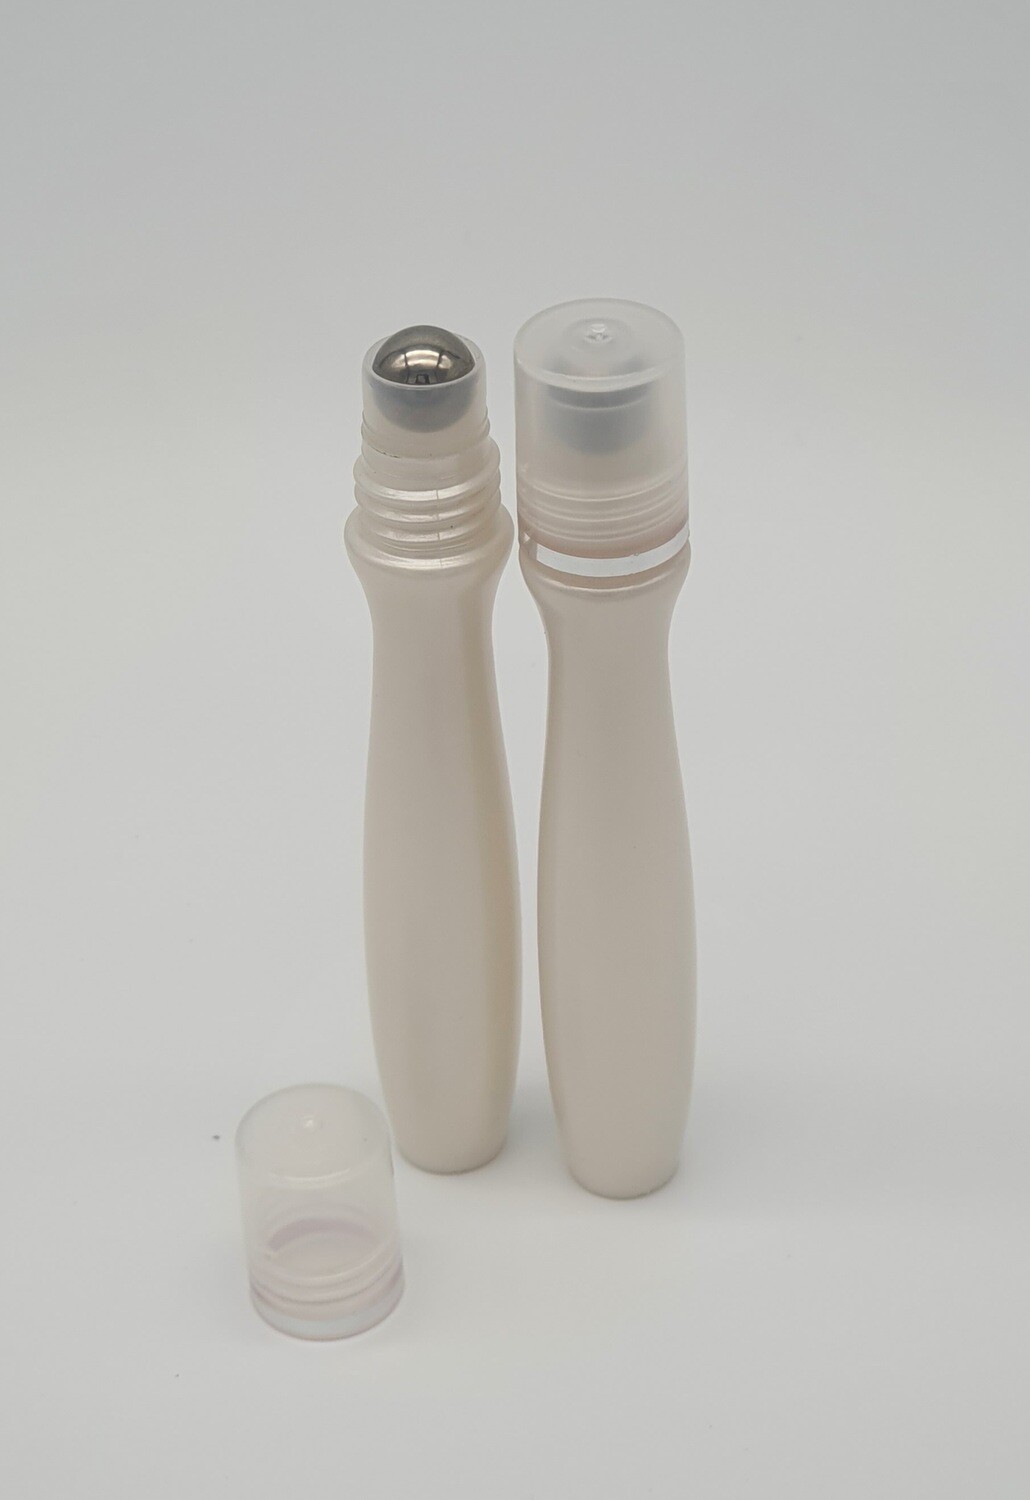 8ML Plastic Deodorant/Essential Oil Roller Bottles Empty Refillable Rollerball Bottle